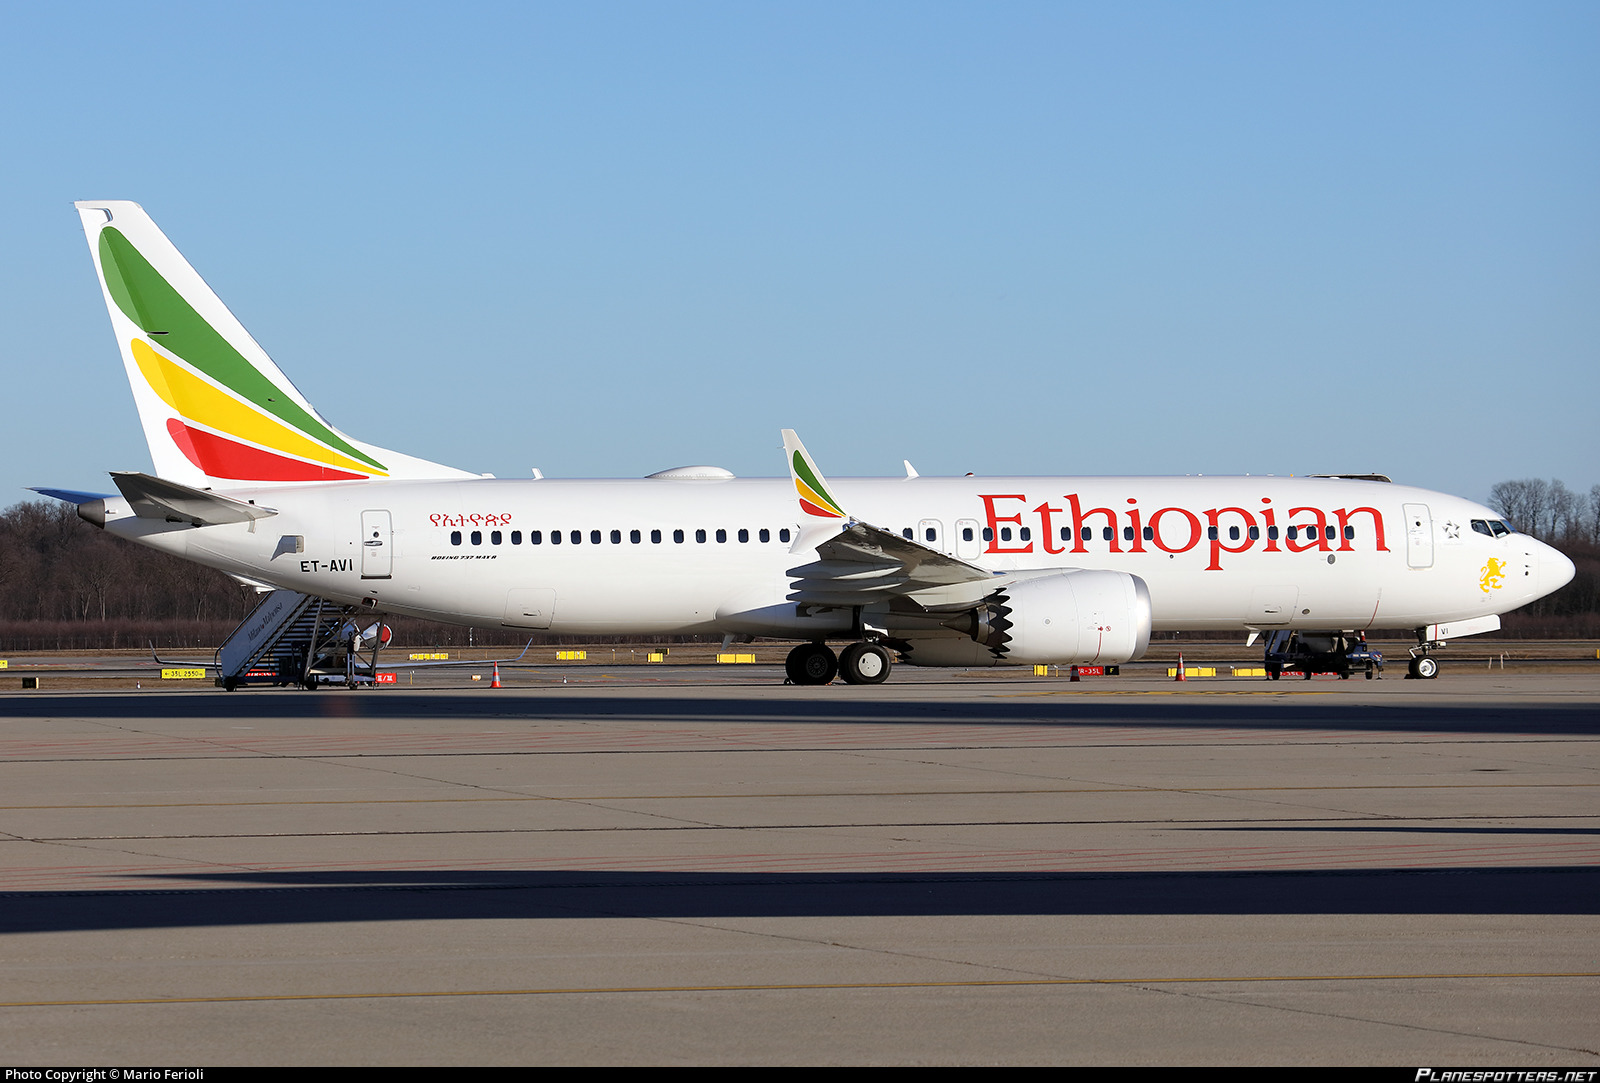 Συντριβή Boeing Αιθιοπία: «Δεν υπάρχουν επιζώντες» – Νεκροί και οι 157 επιβαίνοντες